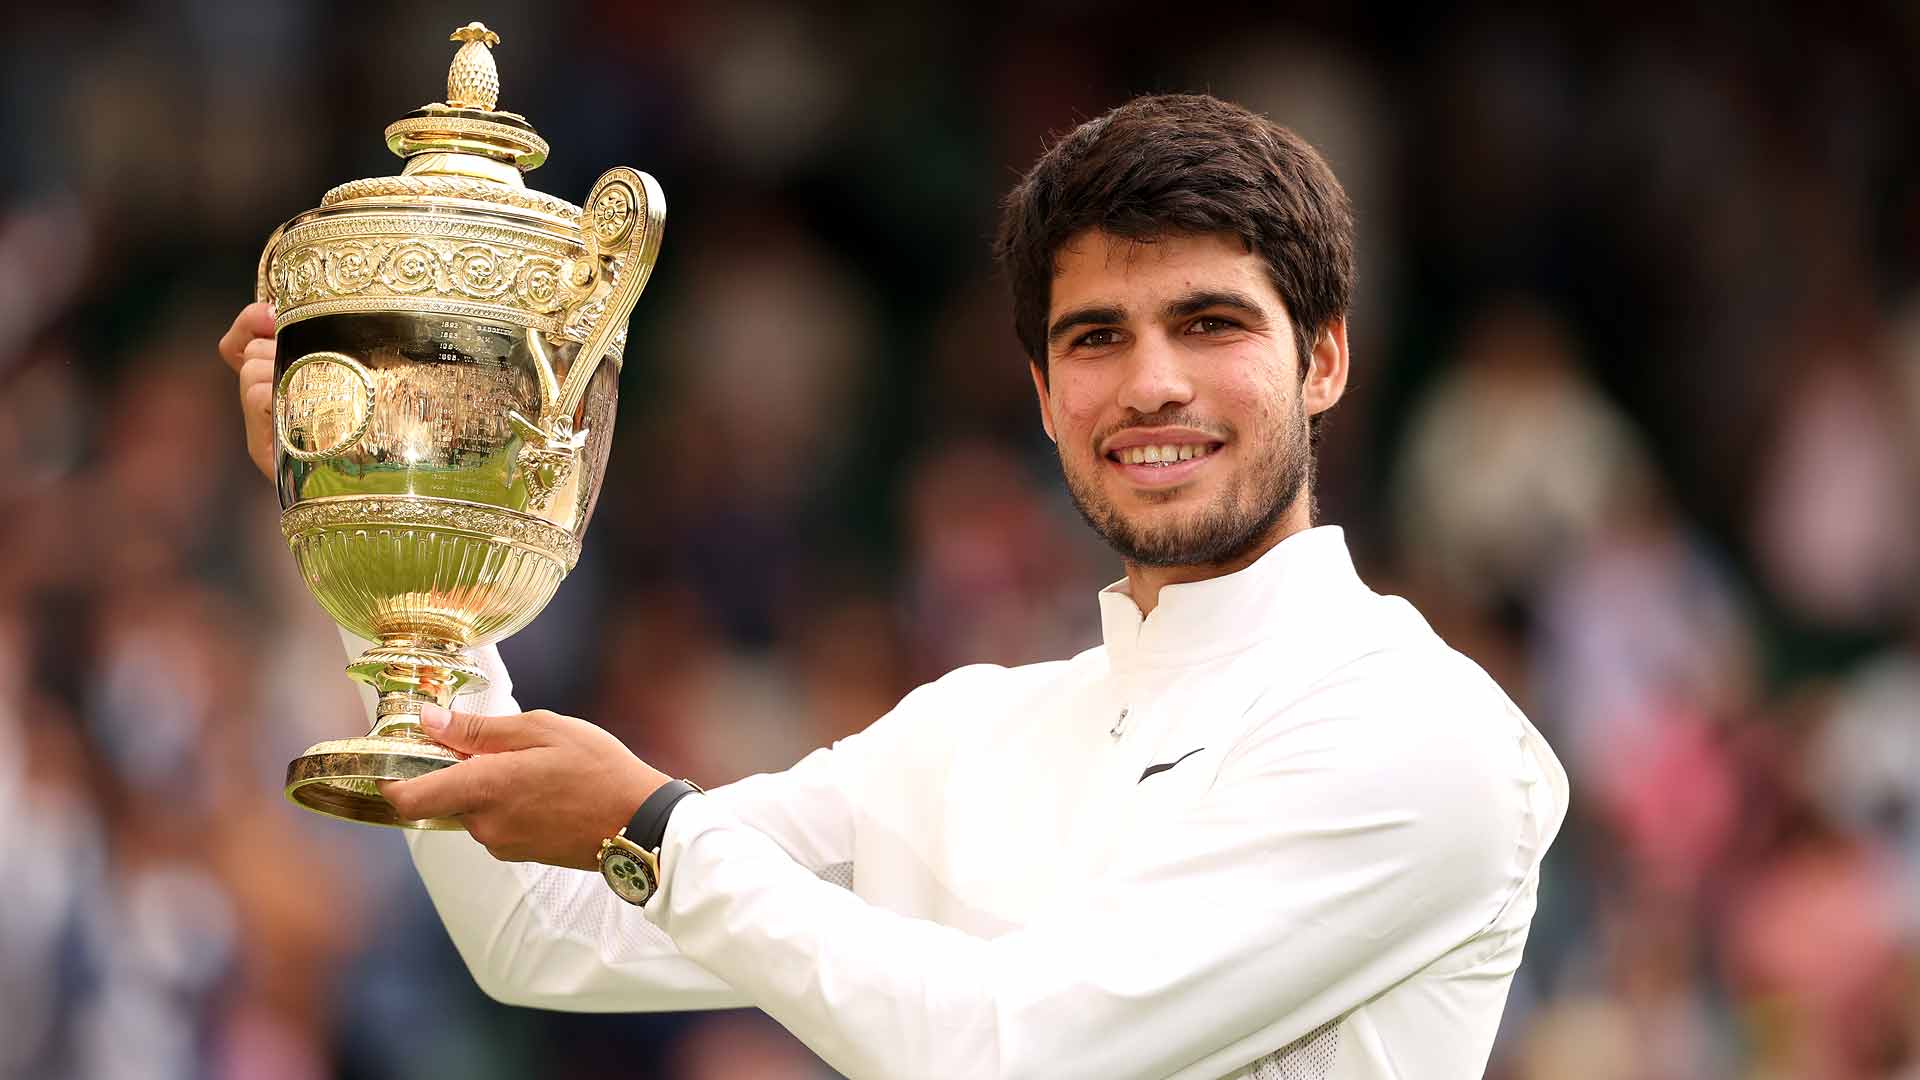 Carlos Alcaraz: “Tiểu Nadal” trên đường thành “tân vương quần vợt” - Ảnh 3.